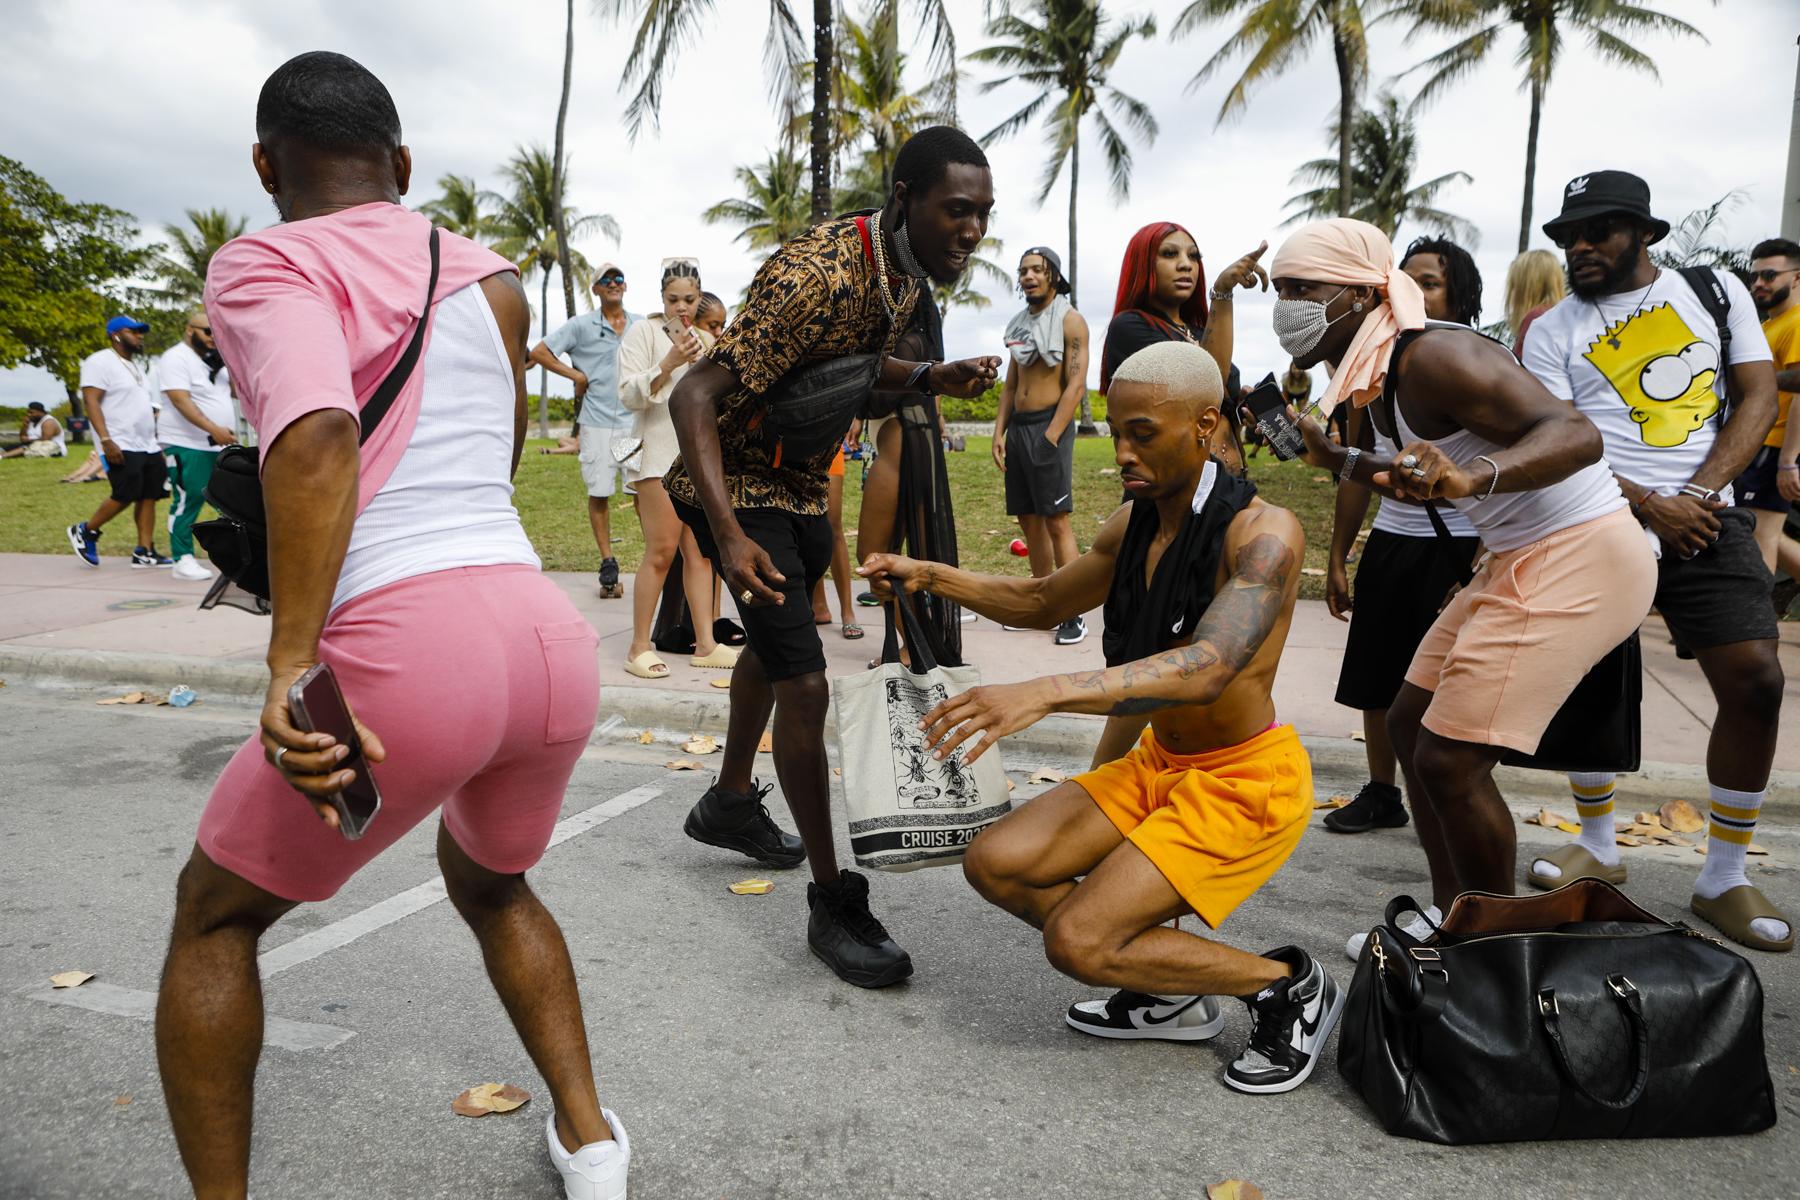 2021 - Spring Break @ Miami Beach - People dance in the streets during Spring Break in Miami...